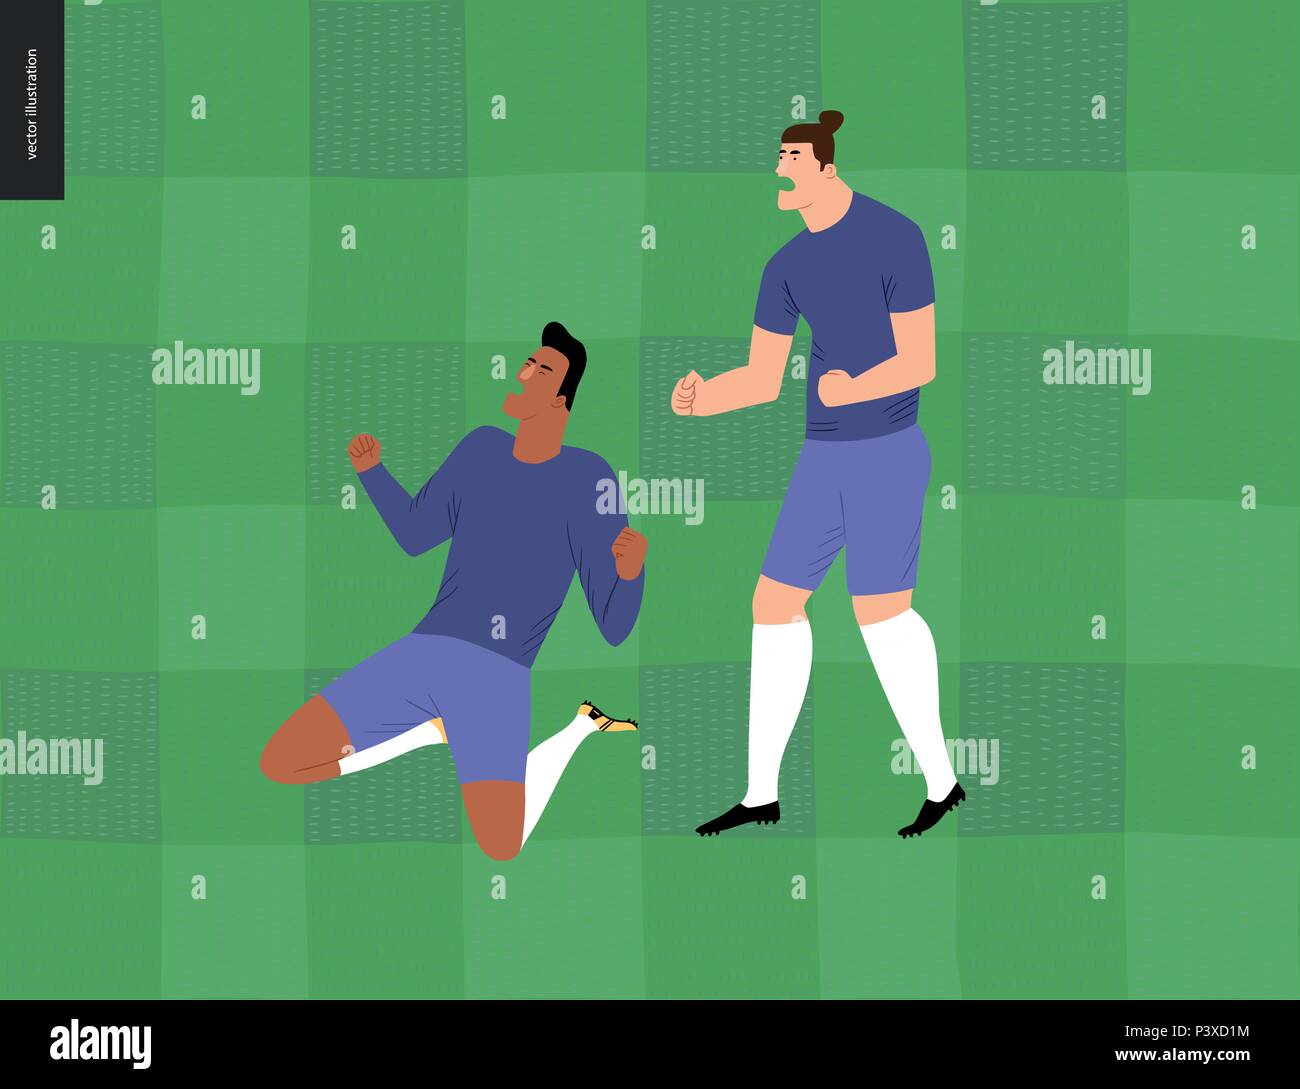 Fußball, Fußballer-Vector Illustration - fußball Spieler, Sieg - zwei junge Männer tragen europäische Fußball-Ausrüstung clenc Stock Vektor